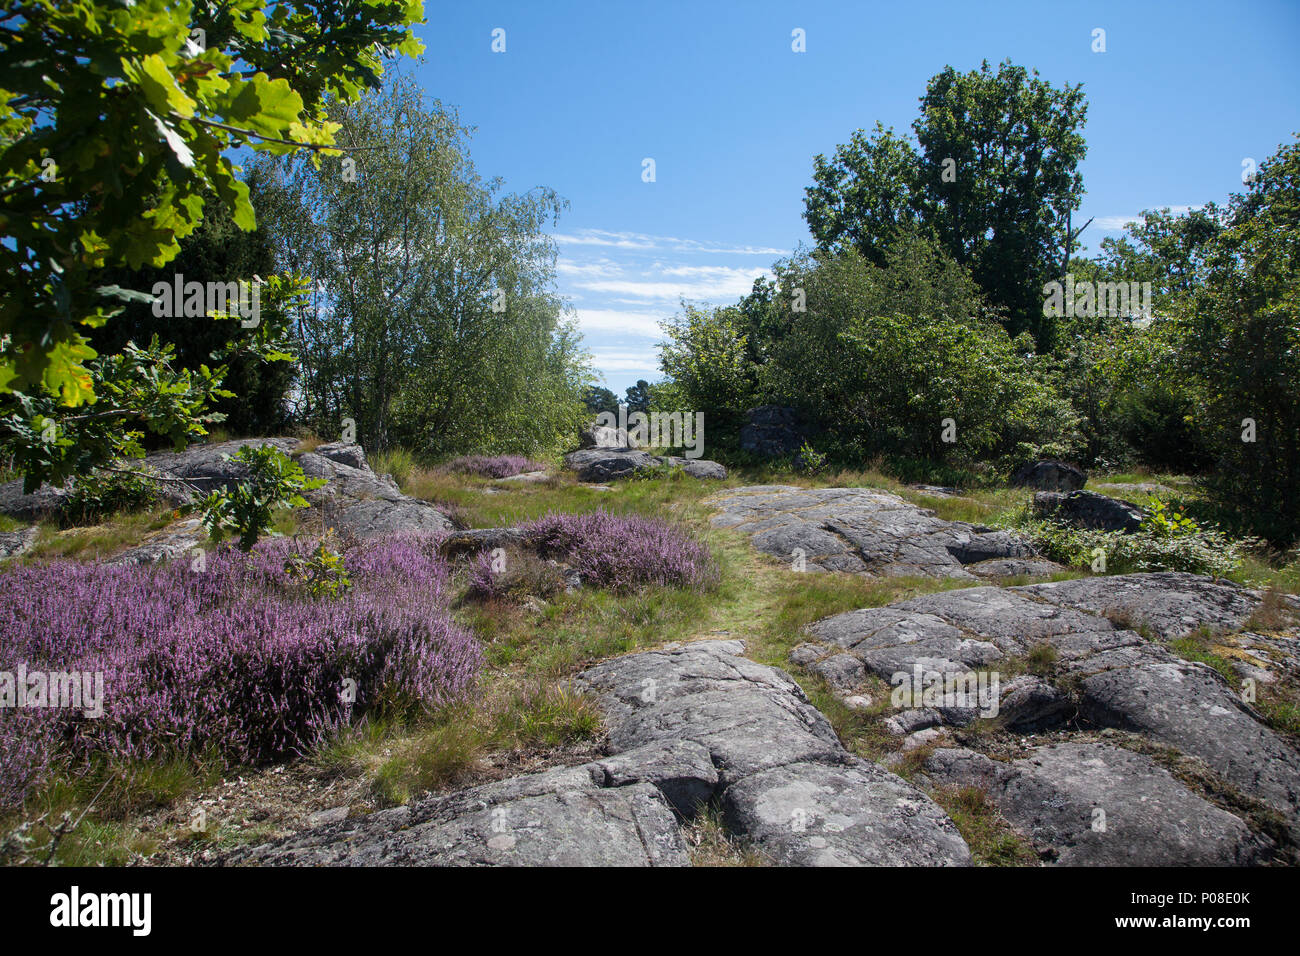 Typische Landschaft in Südschweden typical landscape in Sweden Stock Photo